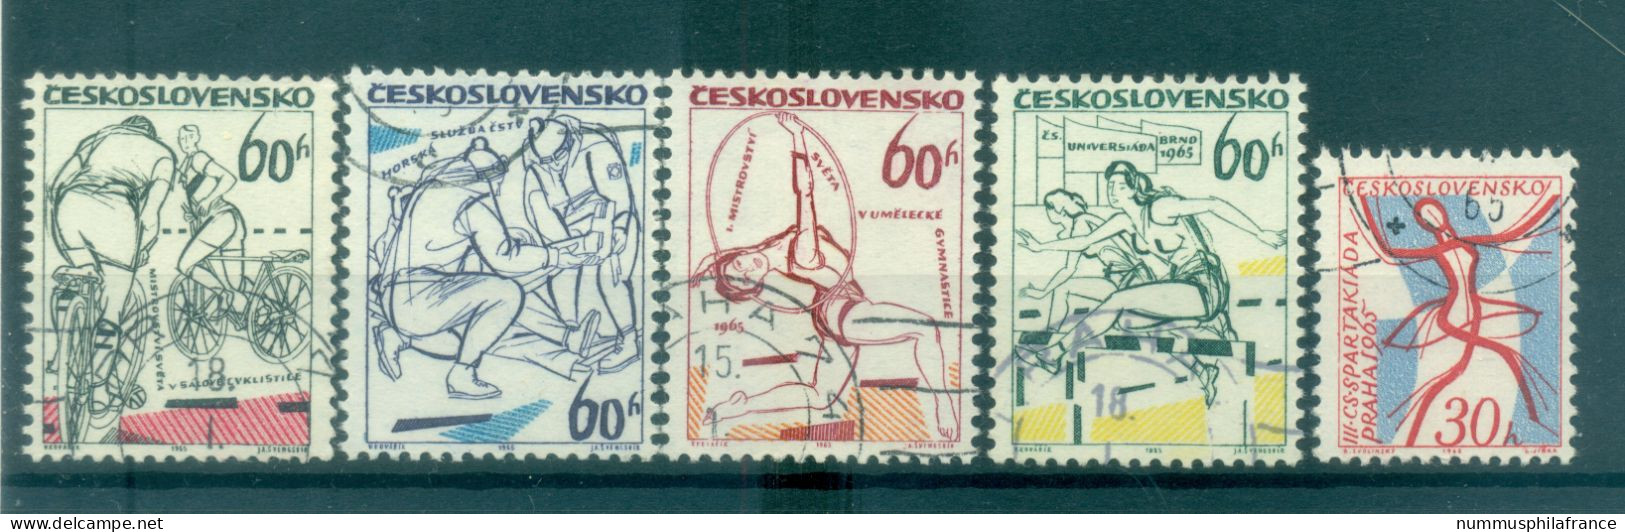 Tchécoslovaquie 1965 - Y & T N. 1369/73 - Evénements Sportifs (Michel N. 1503-1504/07) - Oblitérés